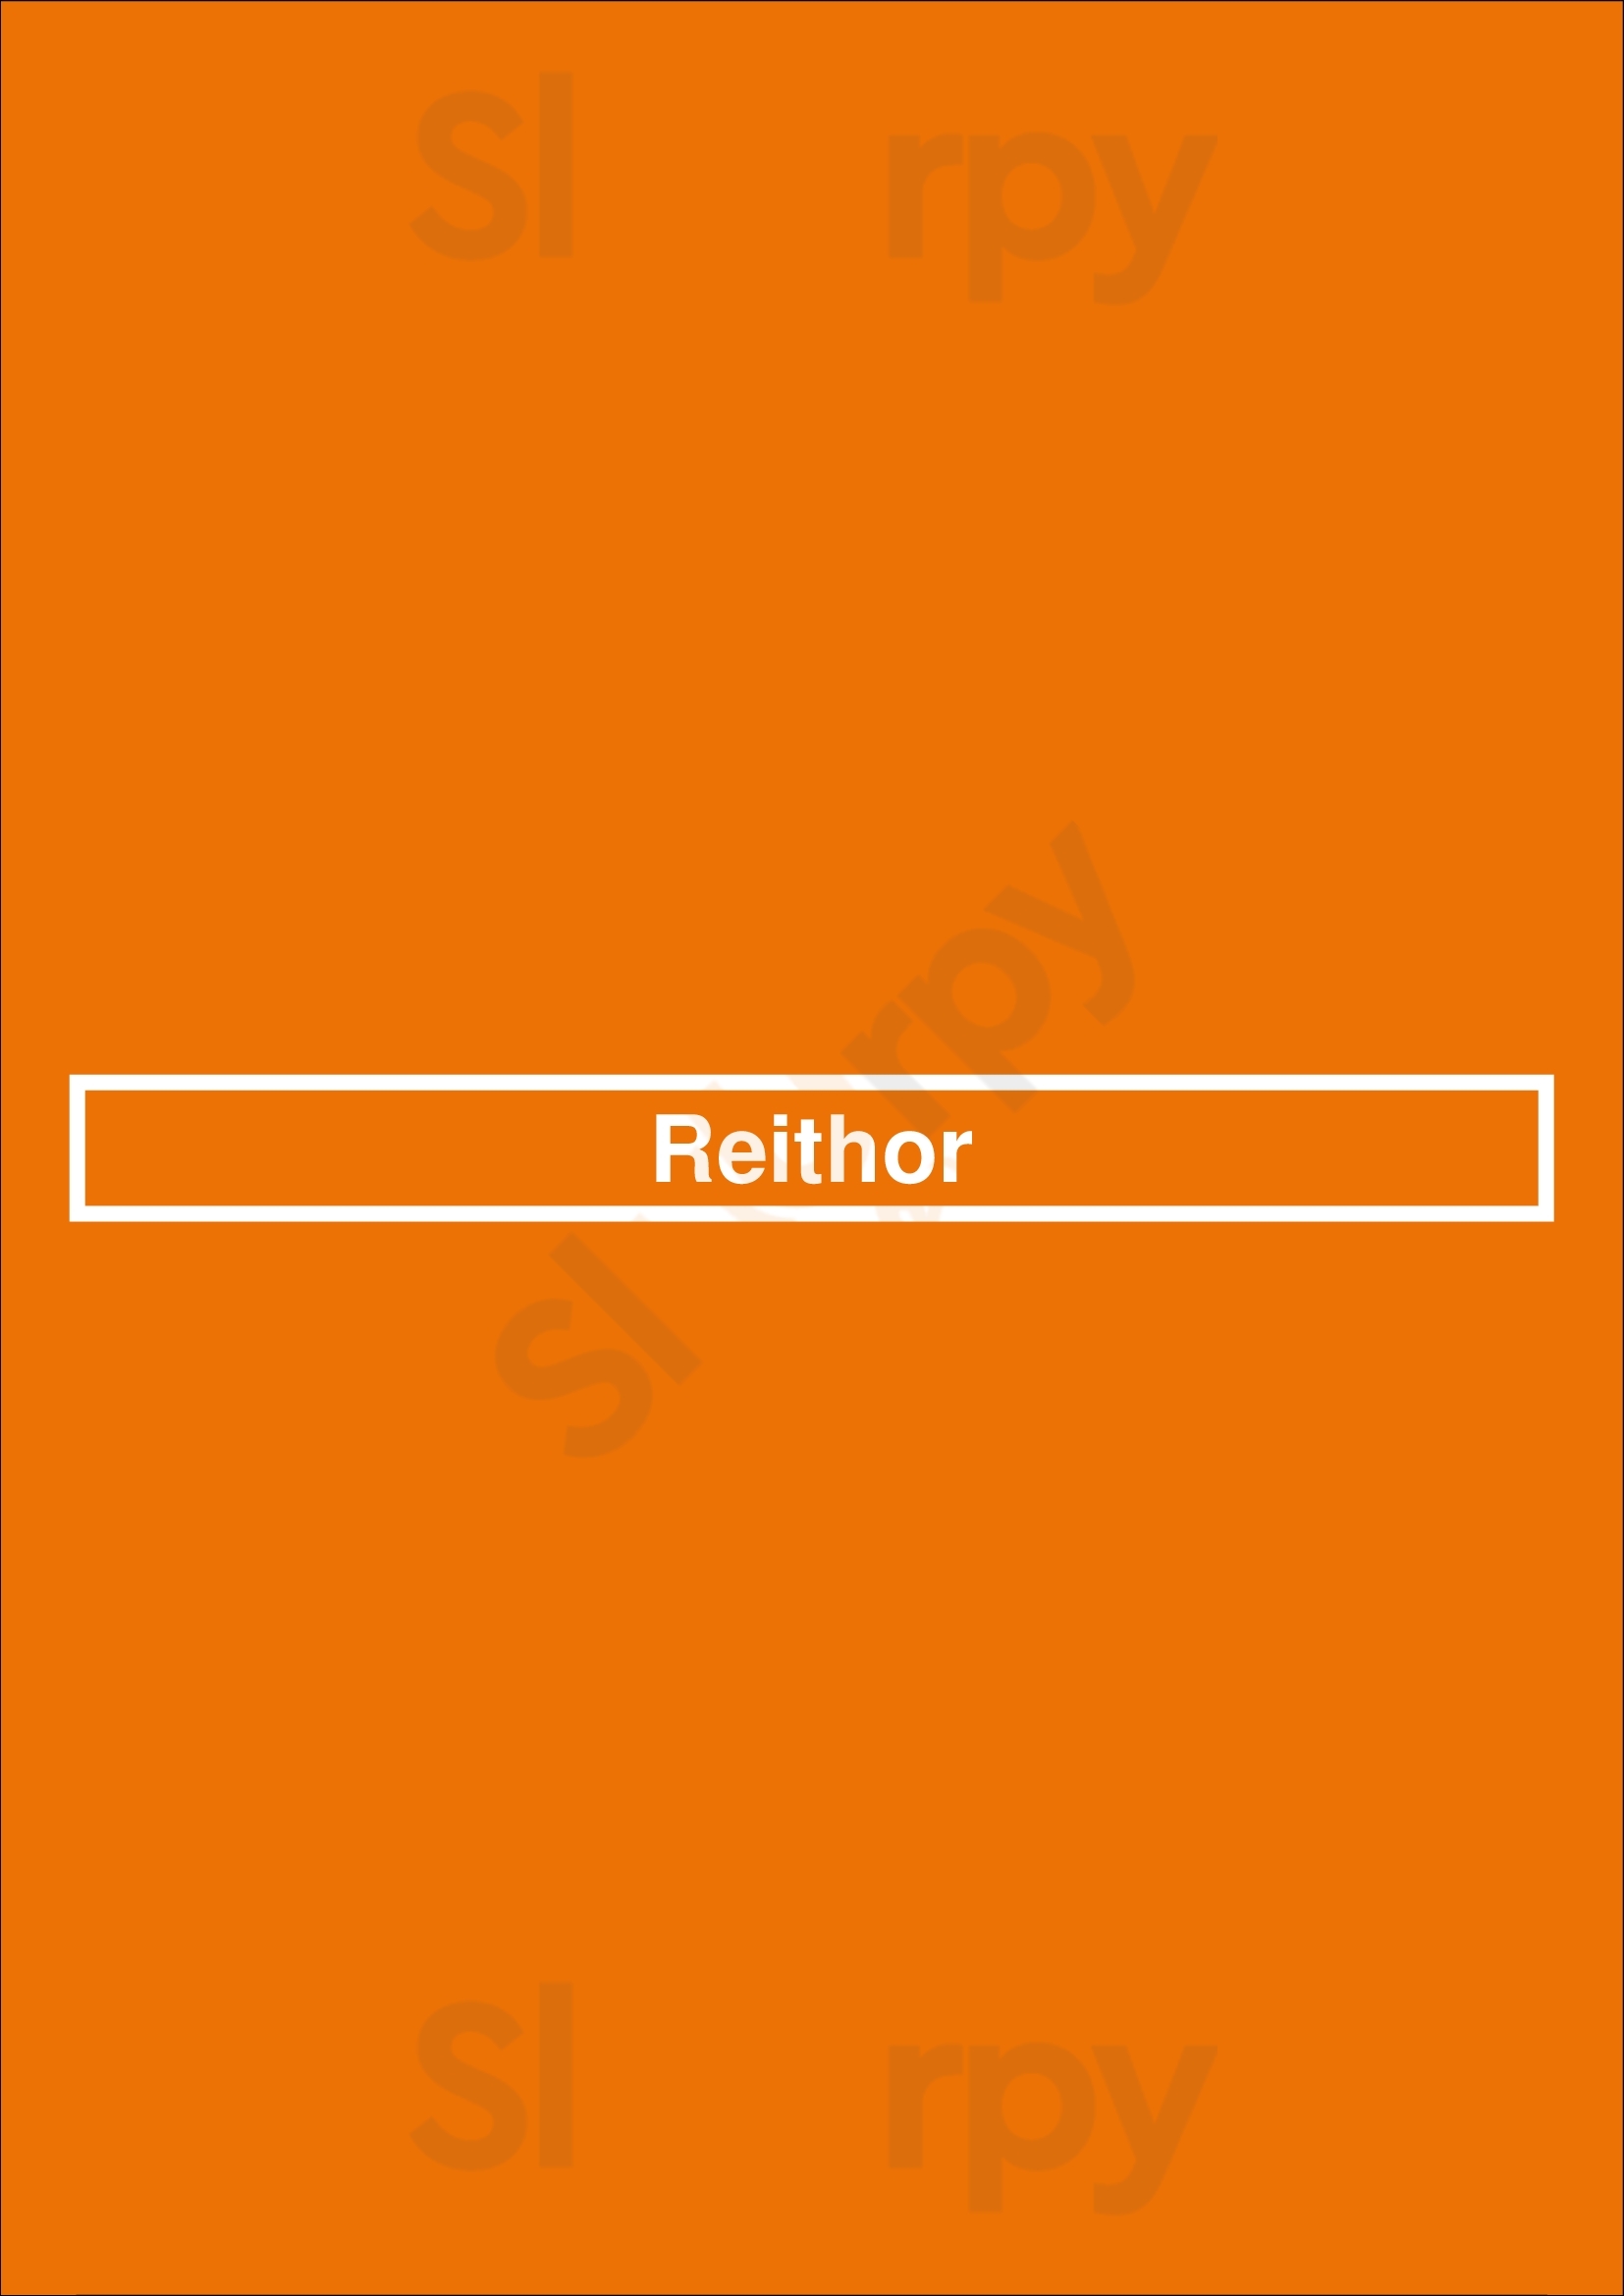 Reithor Porto Menu - 1